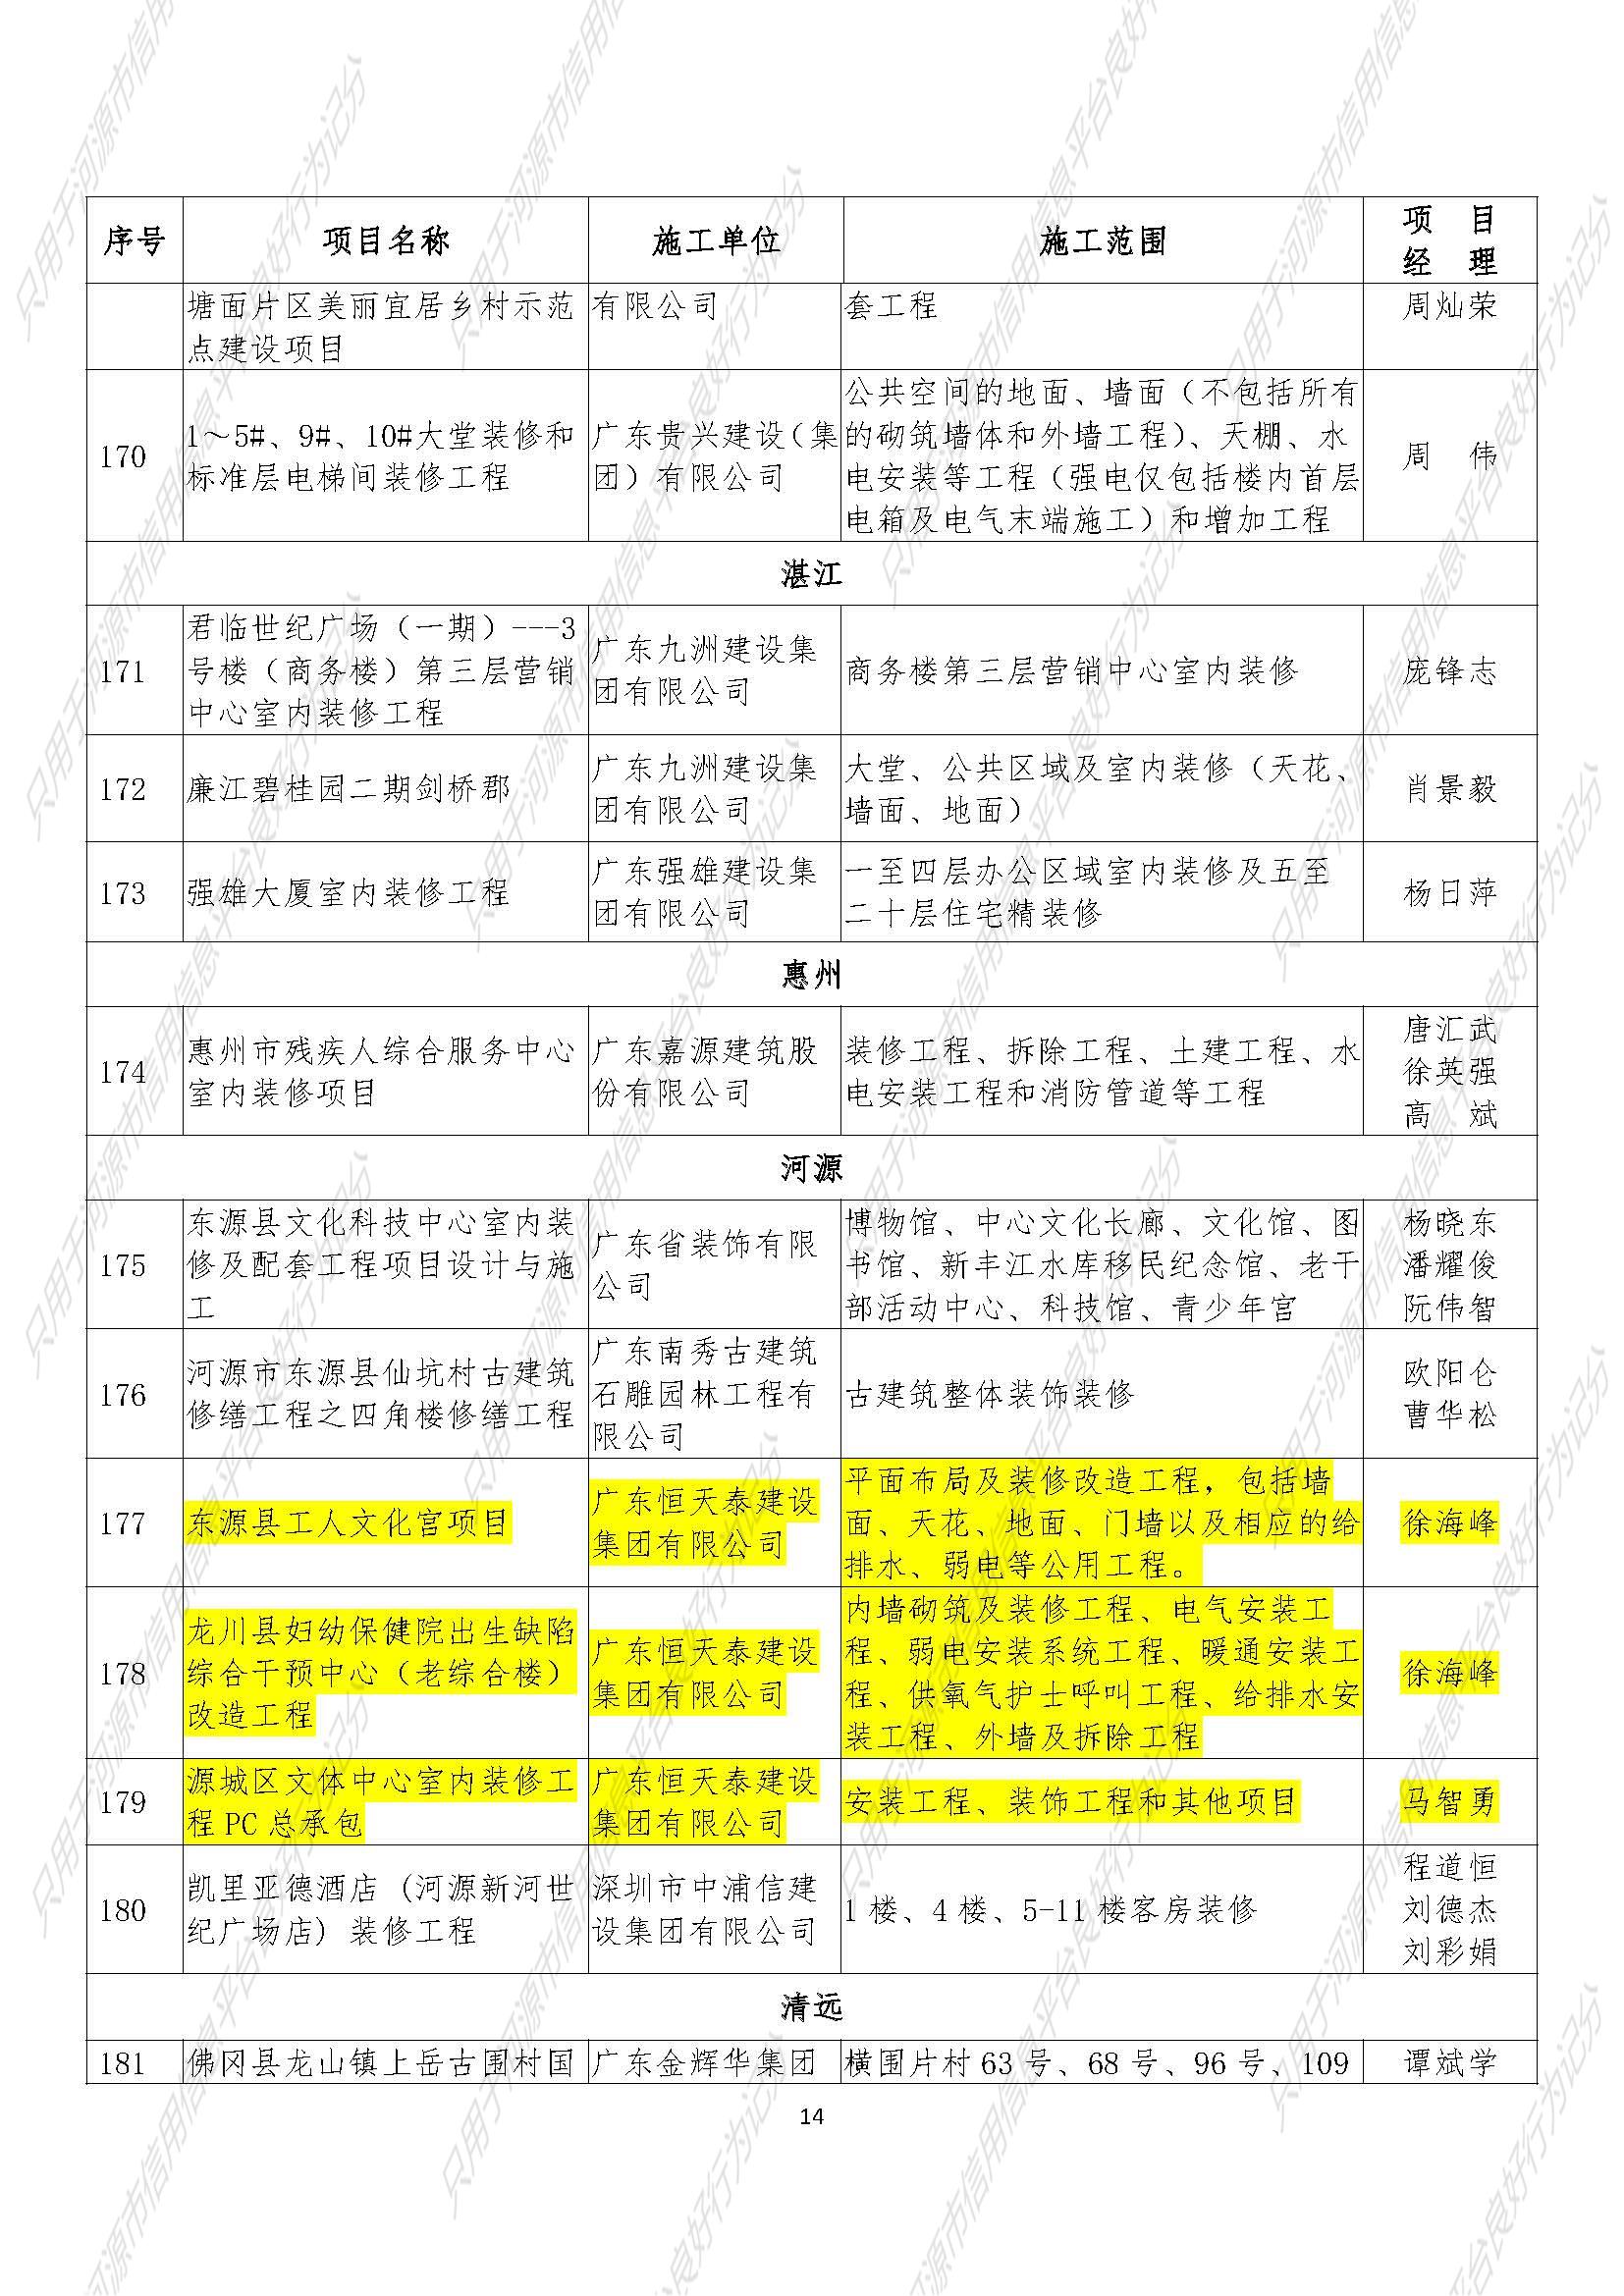 附件：2020年广东省优秀建筑装饰工程奖公示名单